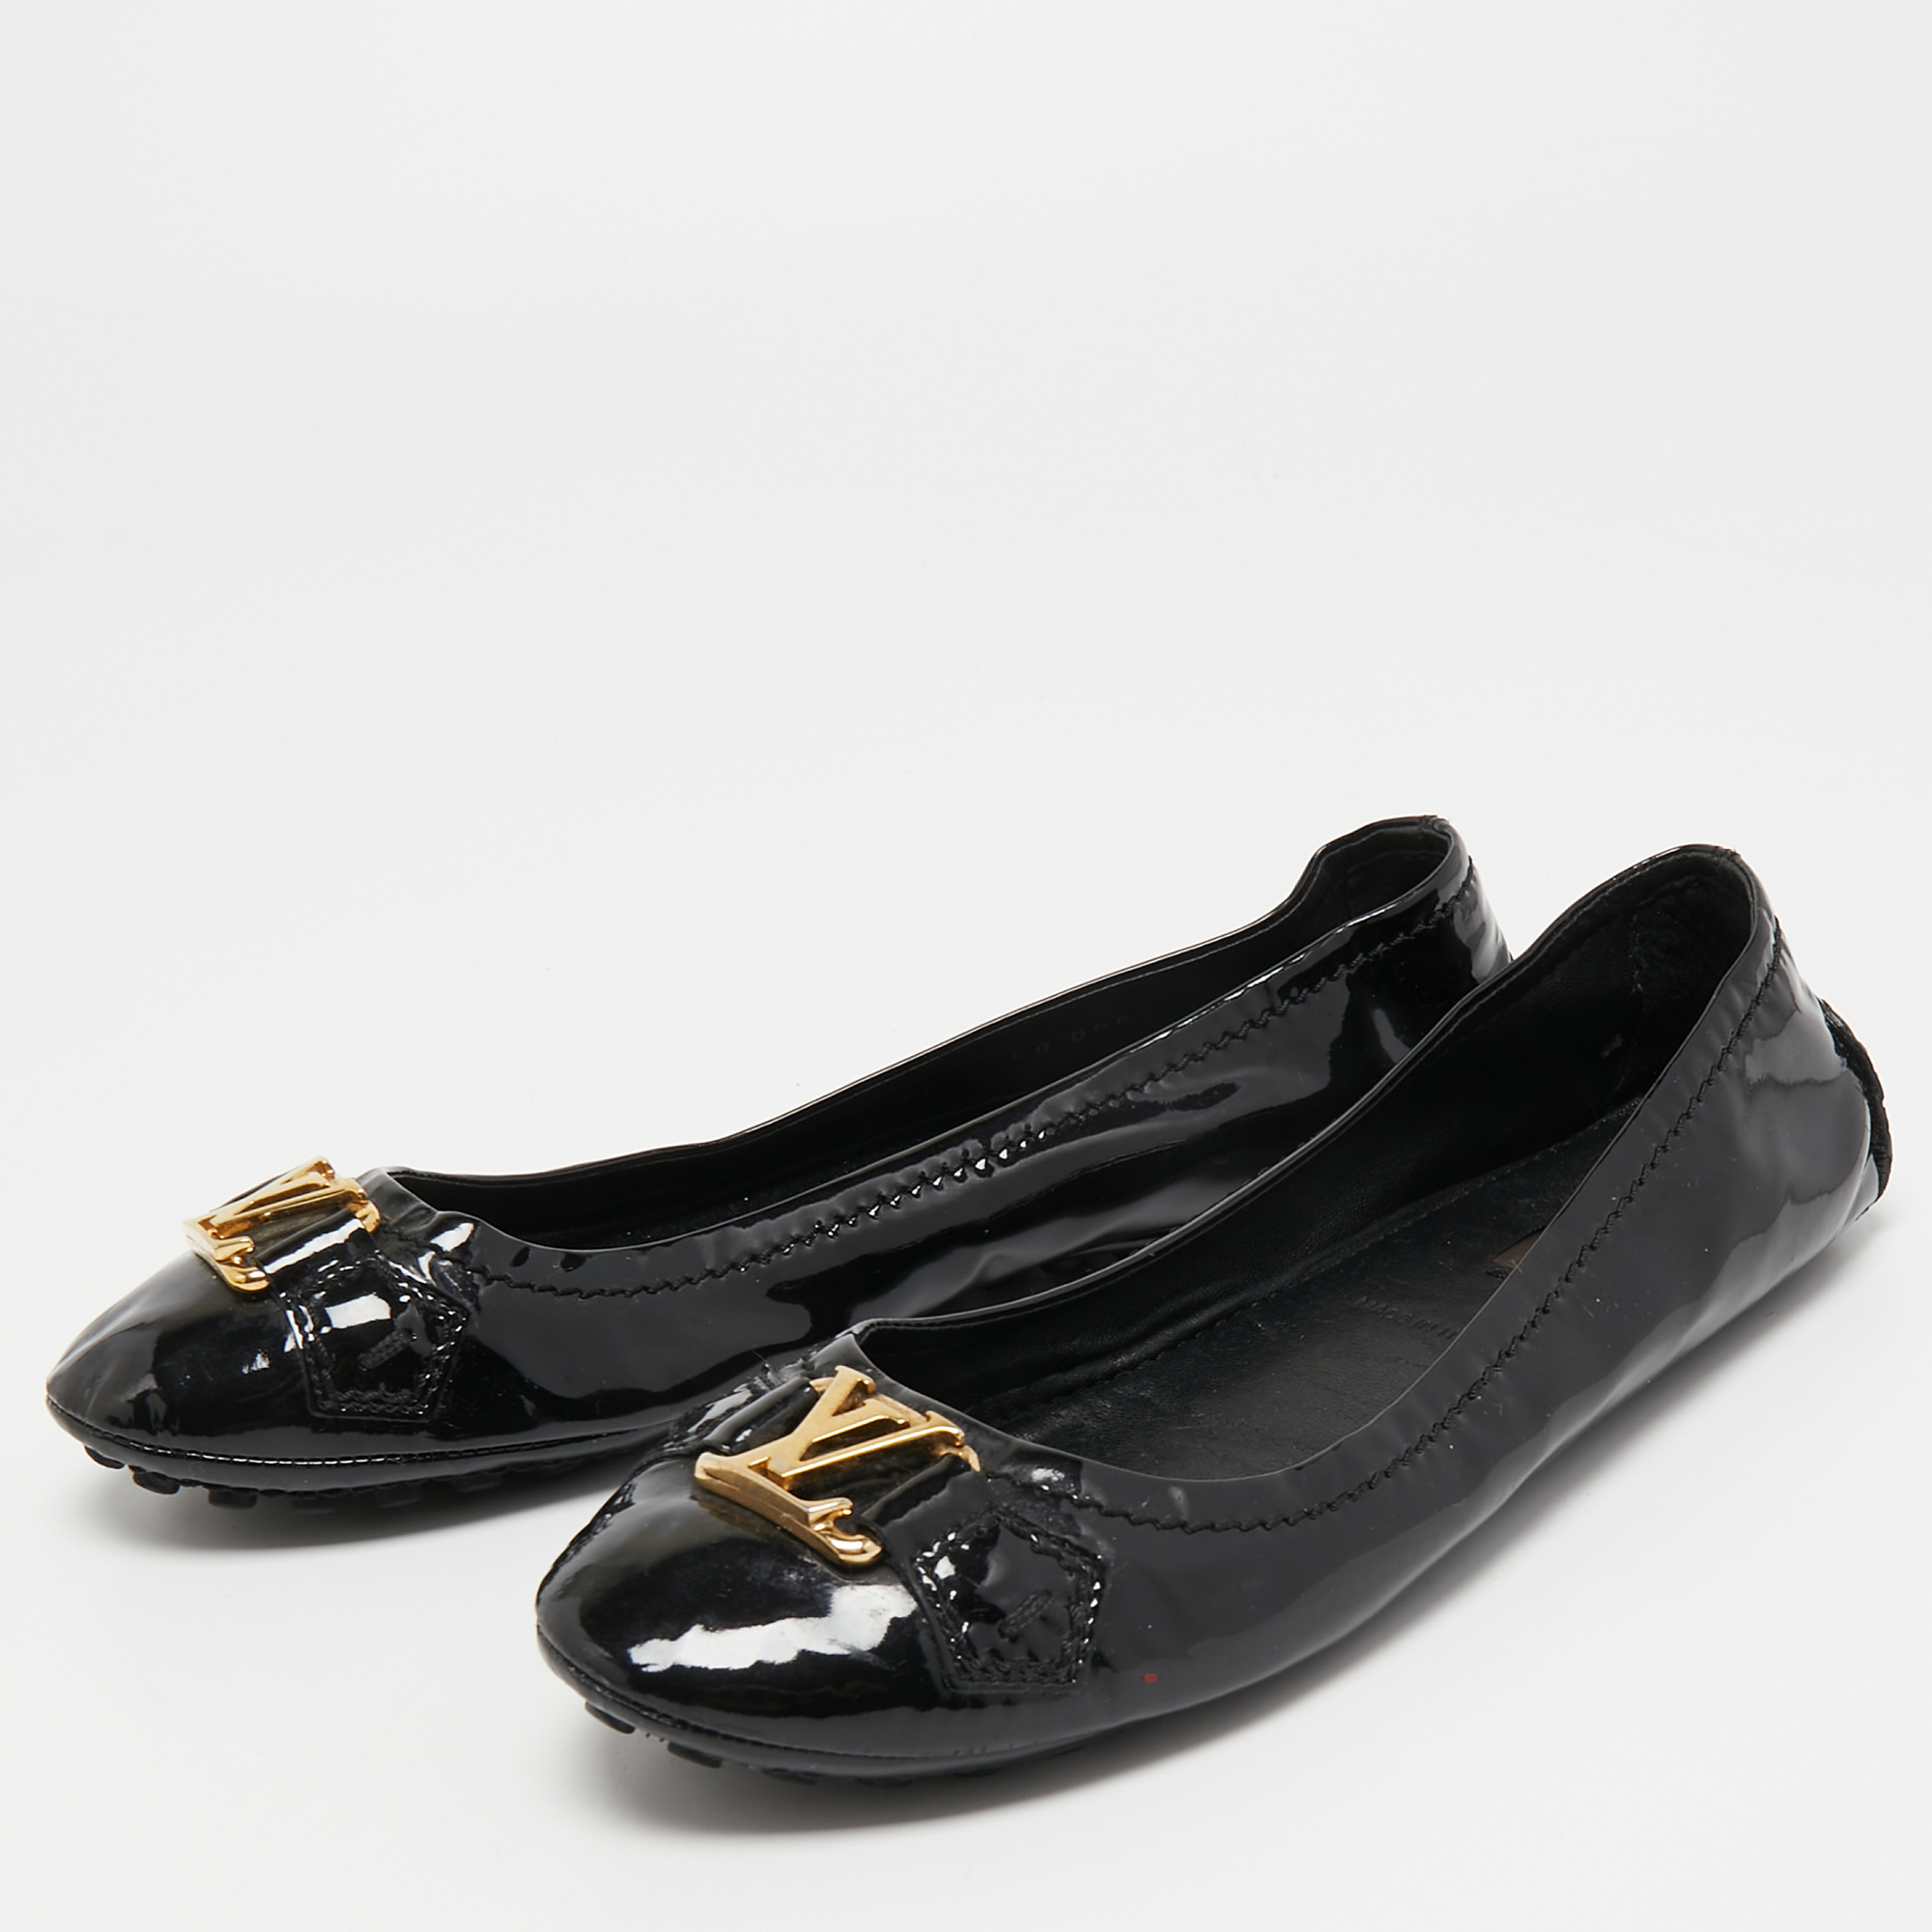 

Louis Vuitton Black Patent Leather Oxford Ballet Flats Size